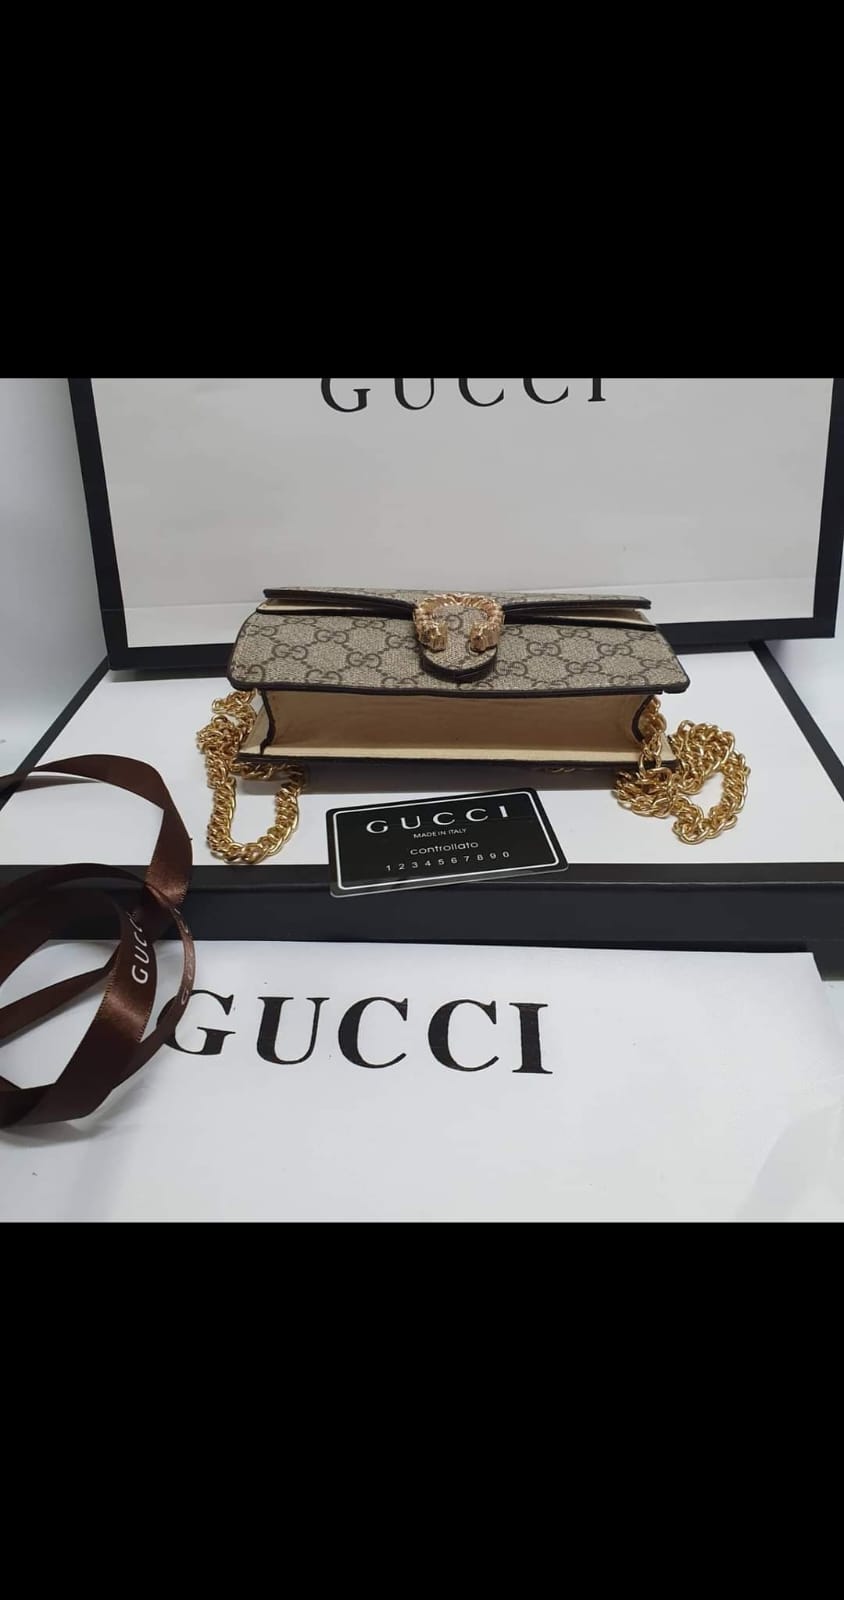 Gucci Dionysus mini Handbag